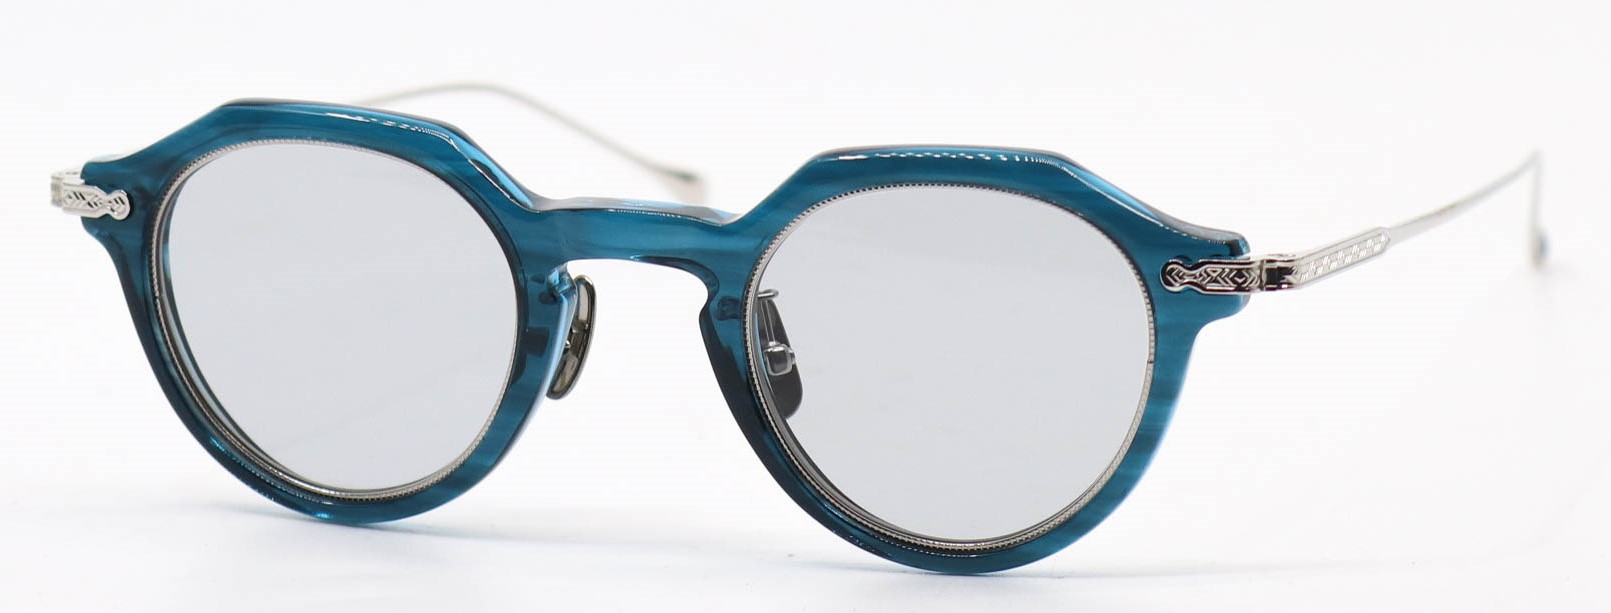 眼鏡のカラータイプC-4 Gray-Blue/Silver